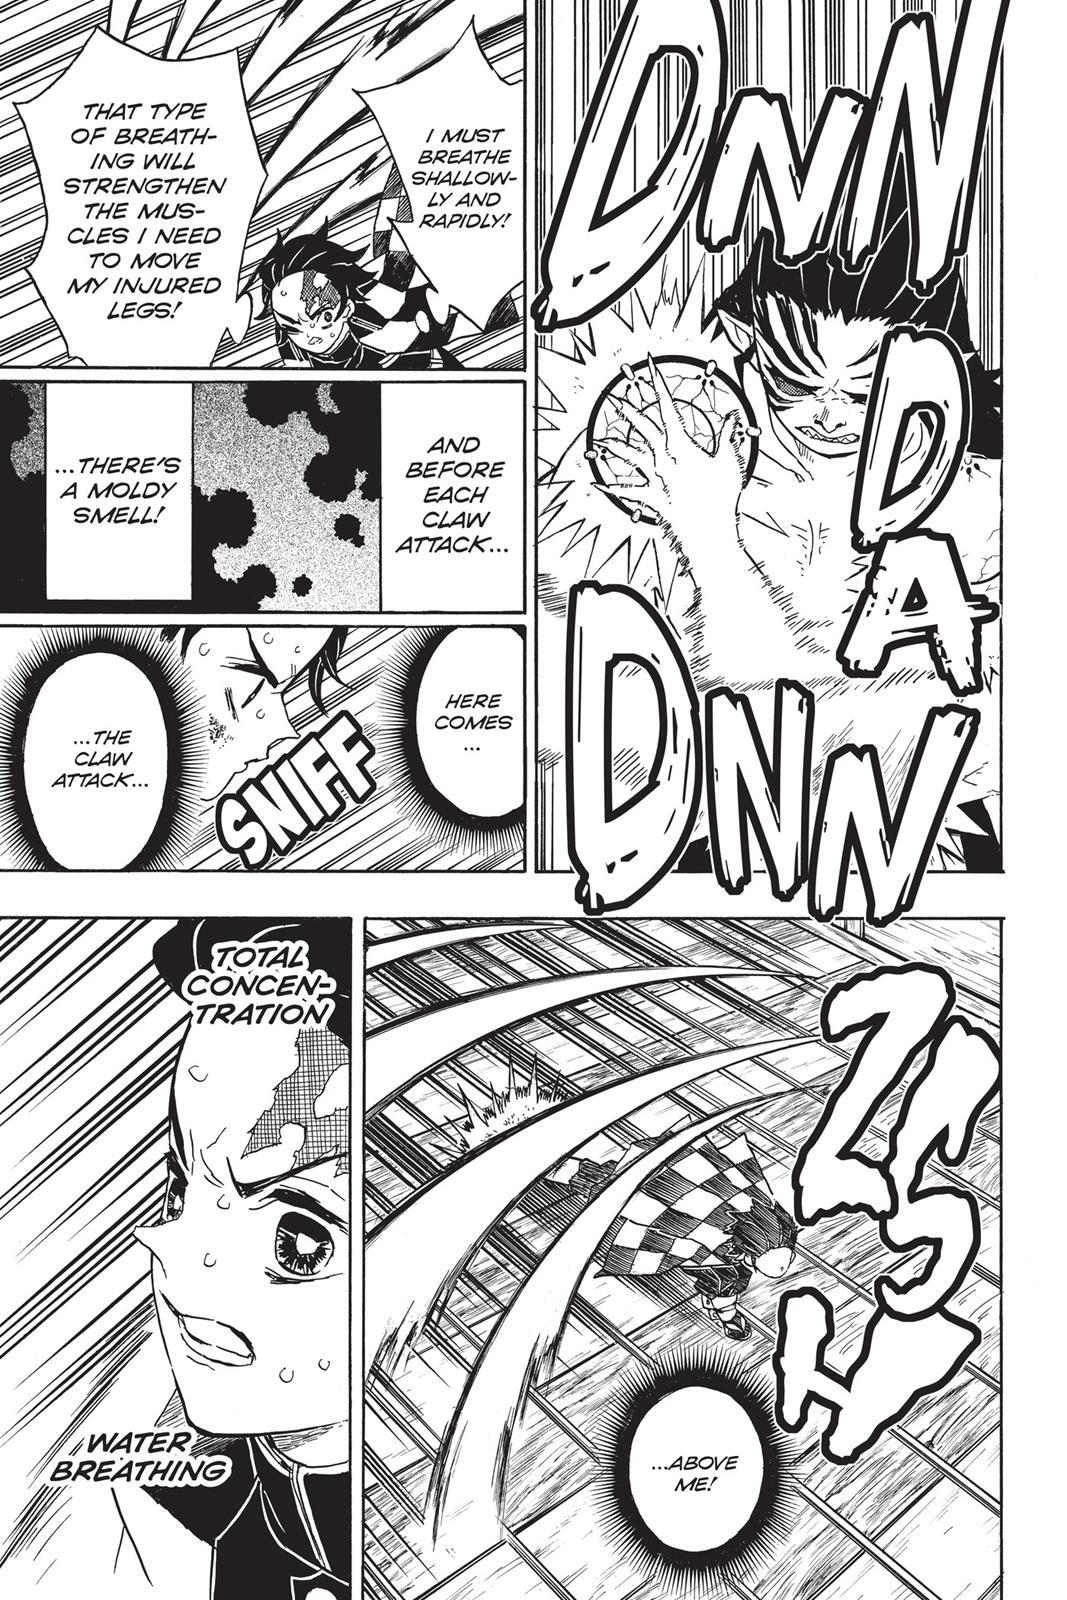 Demon Slayer Manga Manga Chapter - 25 - image 4